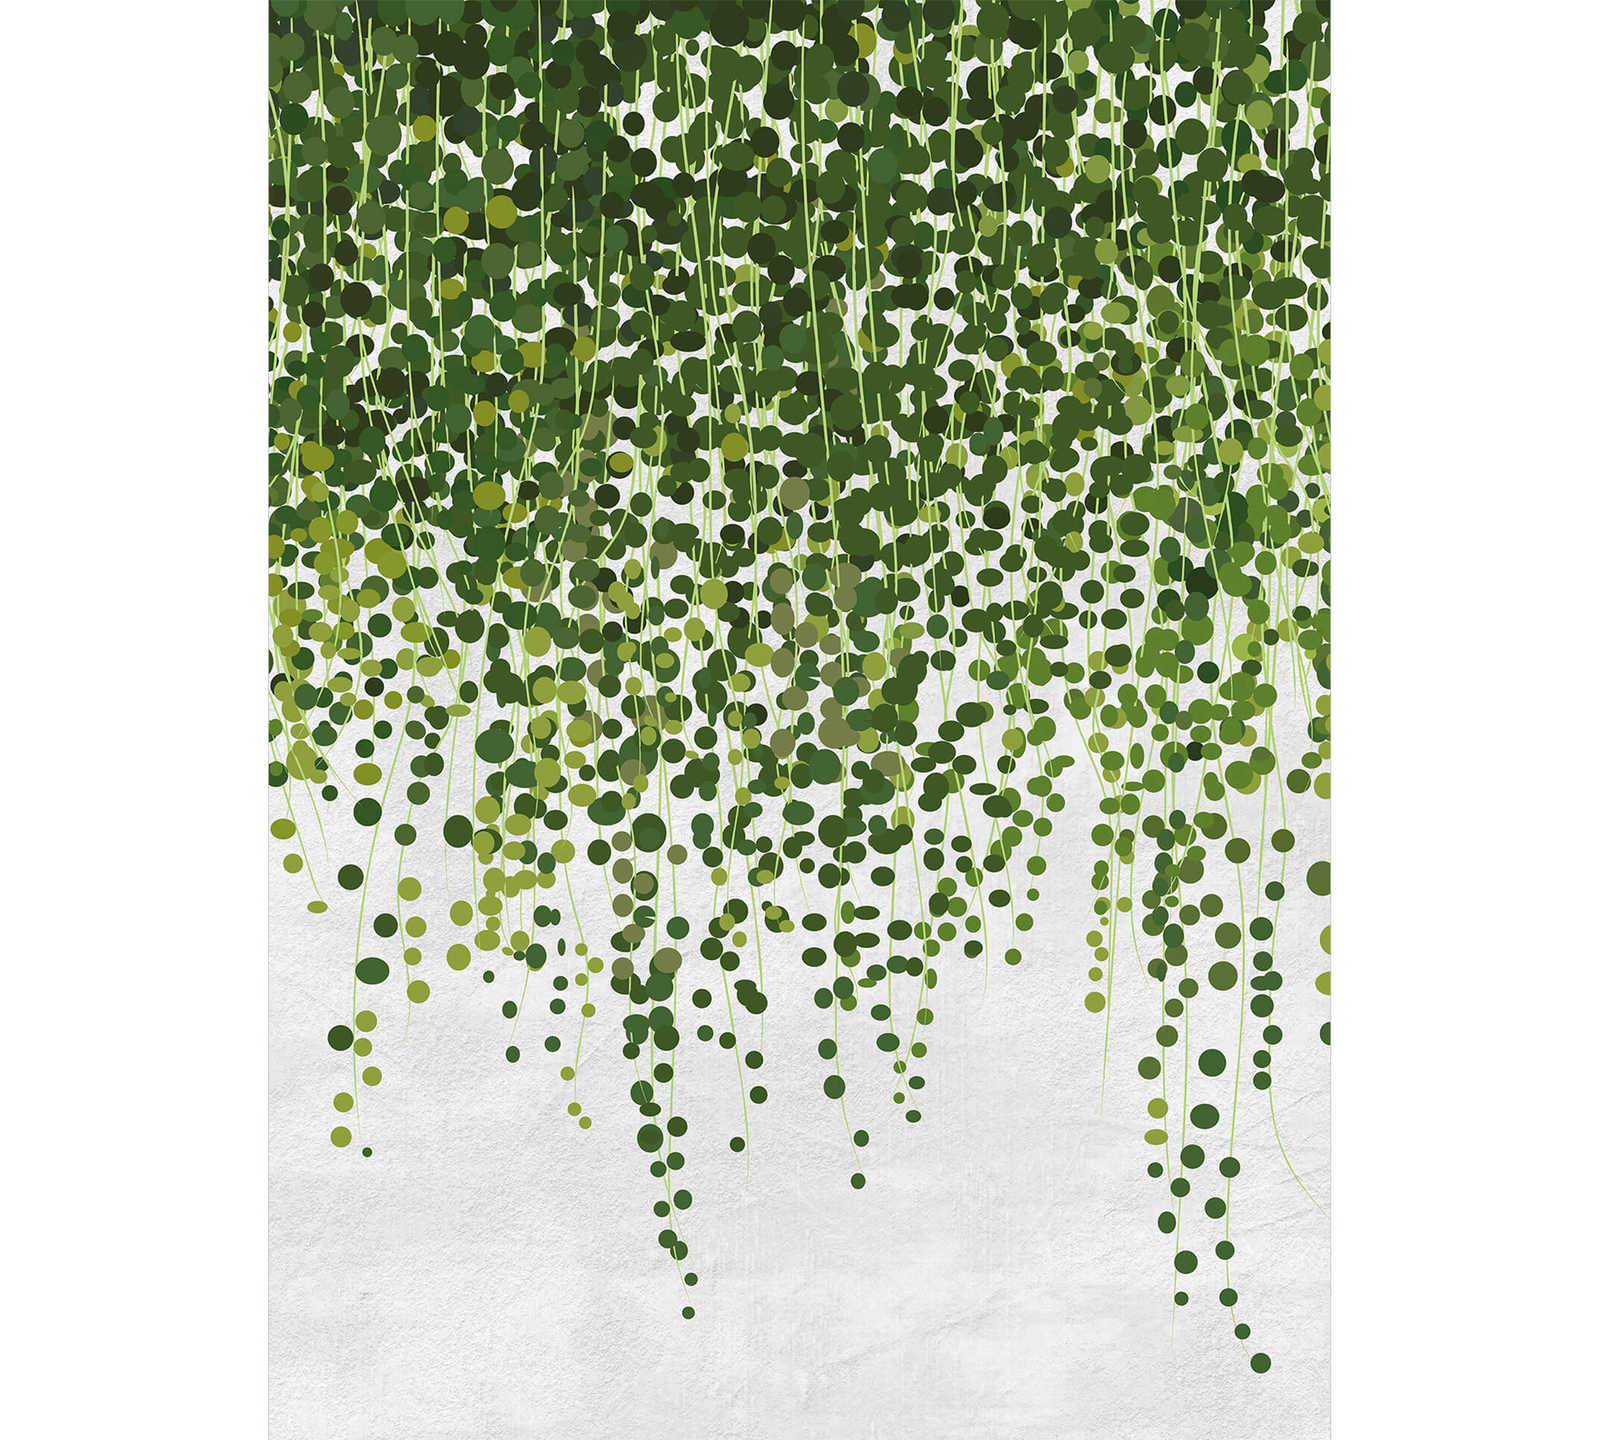             Fototapete Hängende Pflanzen – Grün, Grau
        